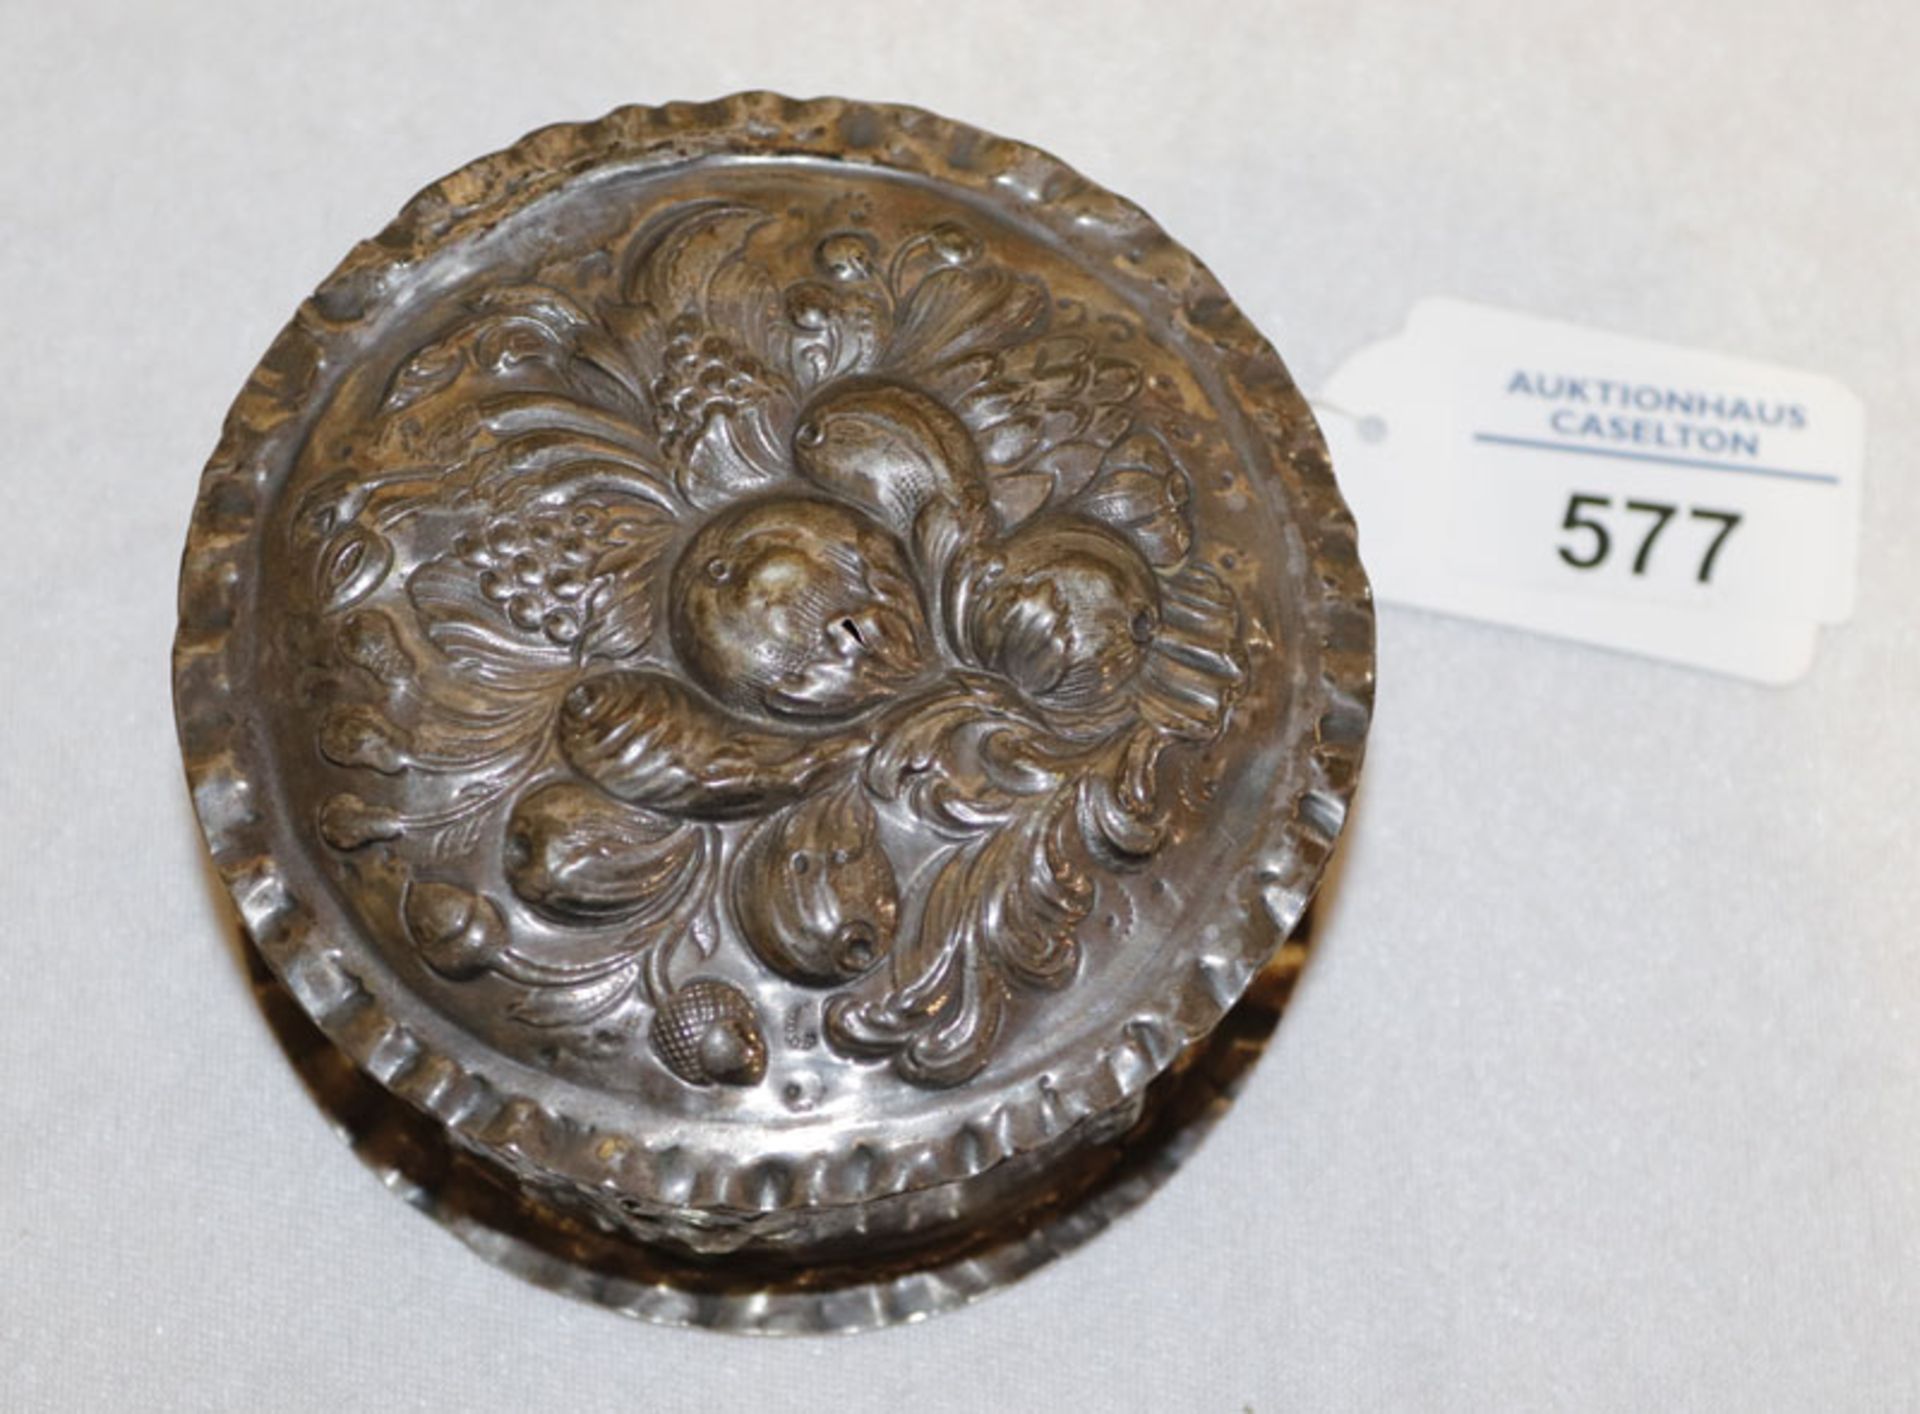 Runde Deckeldose mit reliefiertem Früchtedekor, 13 Lot Silber, H 4,5 cm, D 10 cm, 114 gr.,